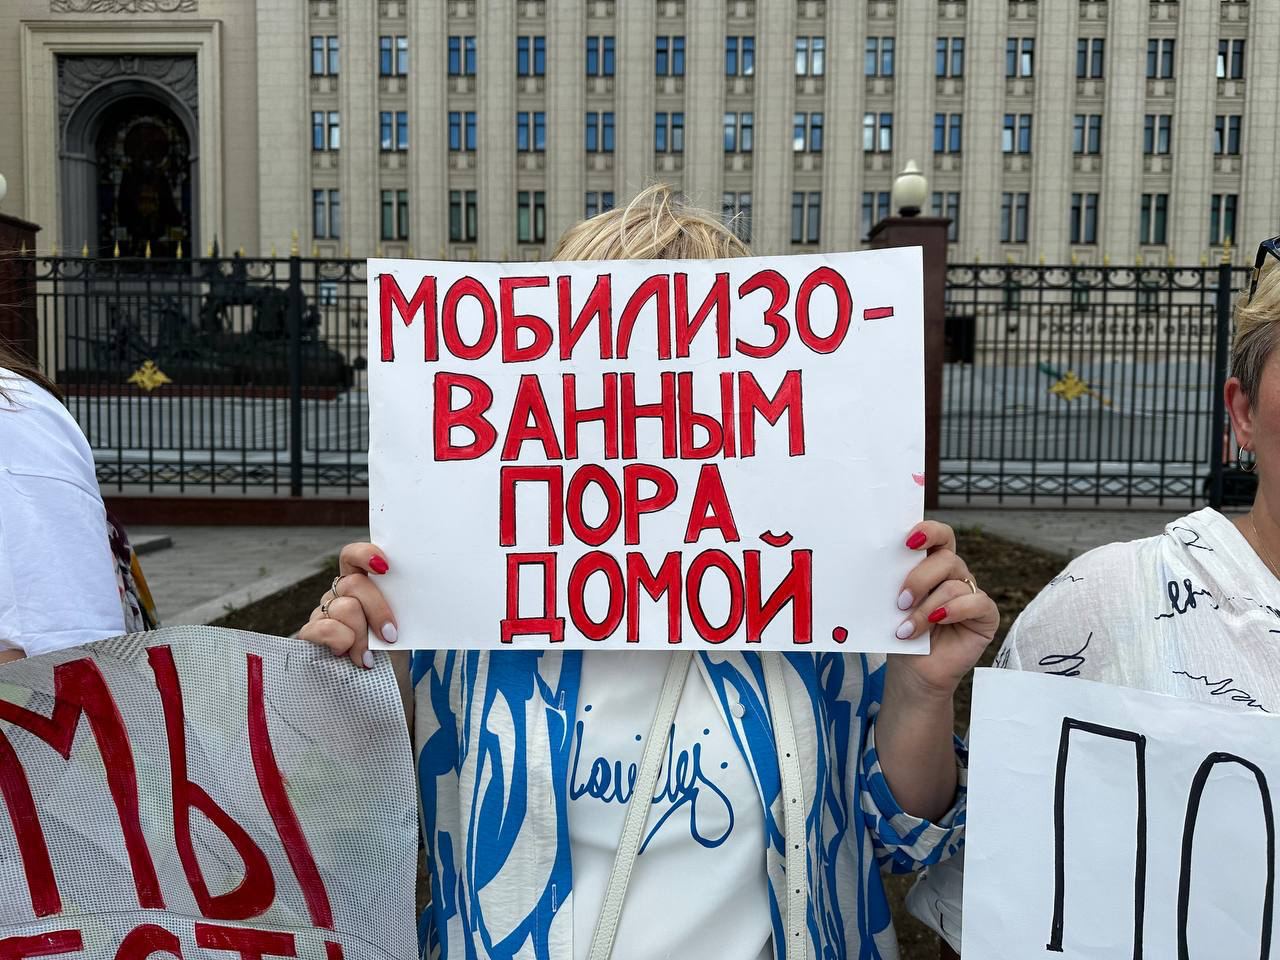 Фото (4) участниц пикета в Москве. Источник - Телеграм